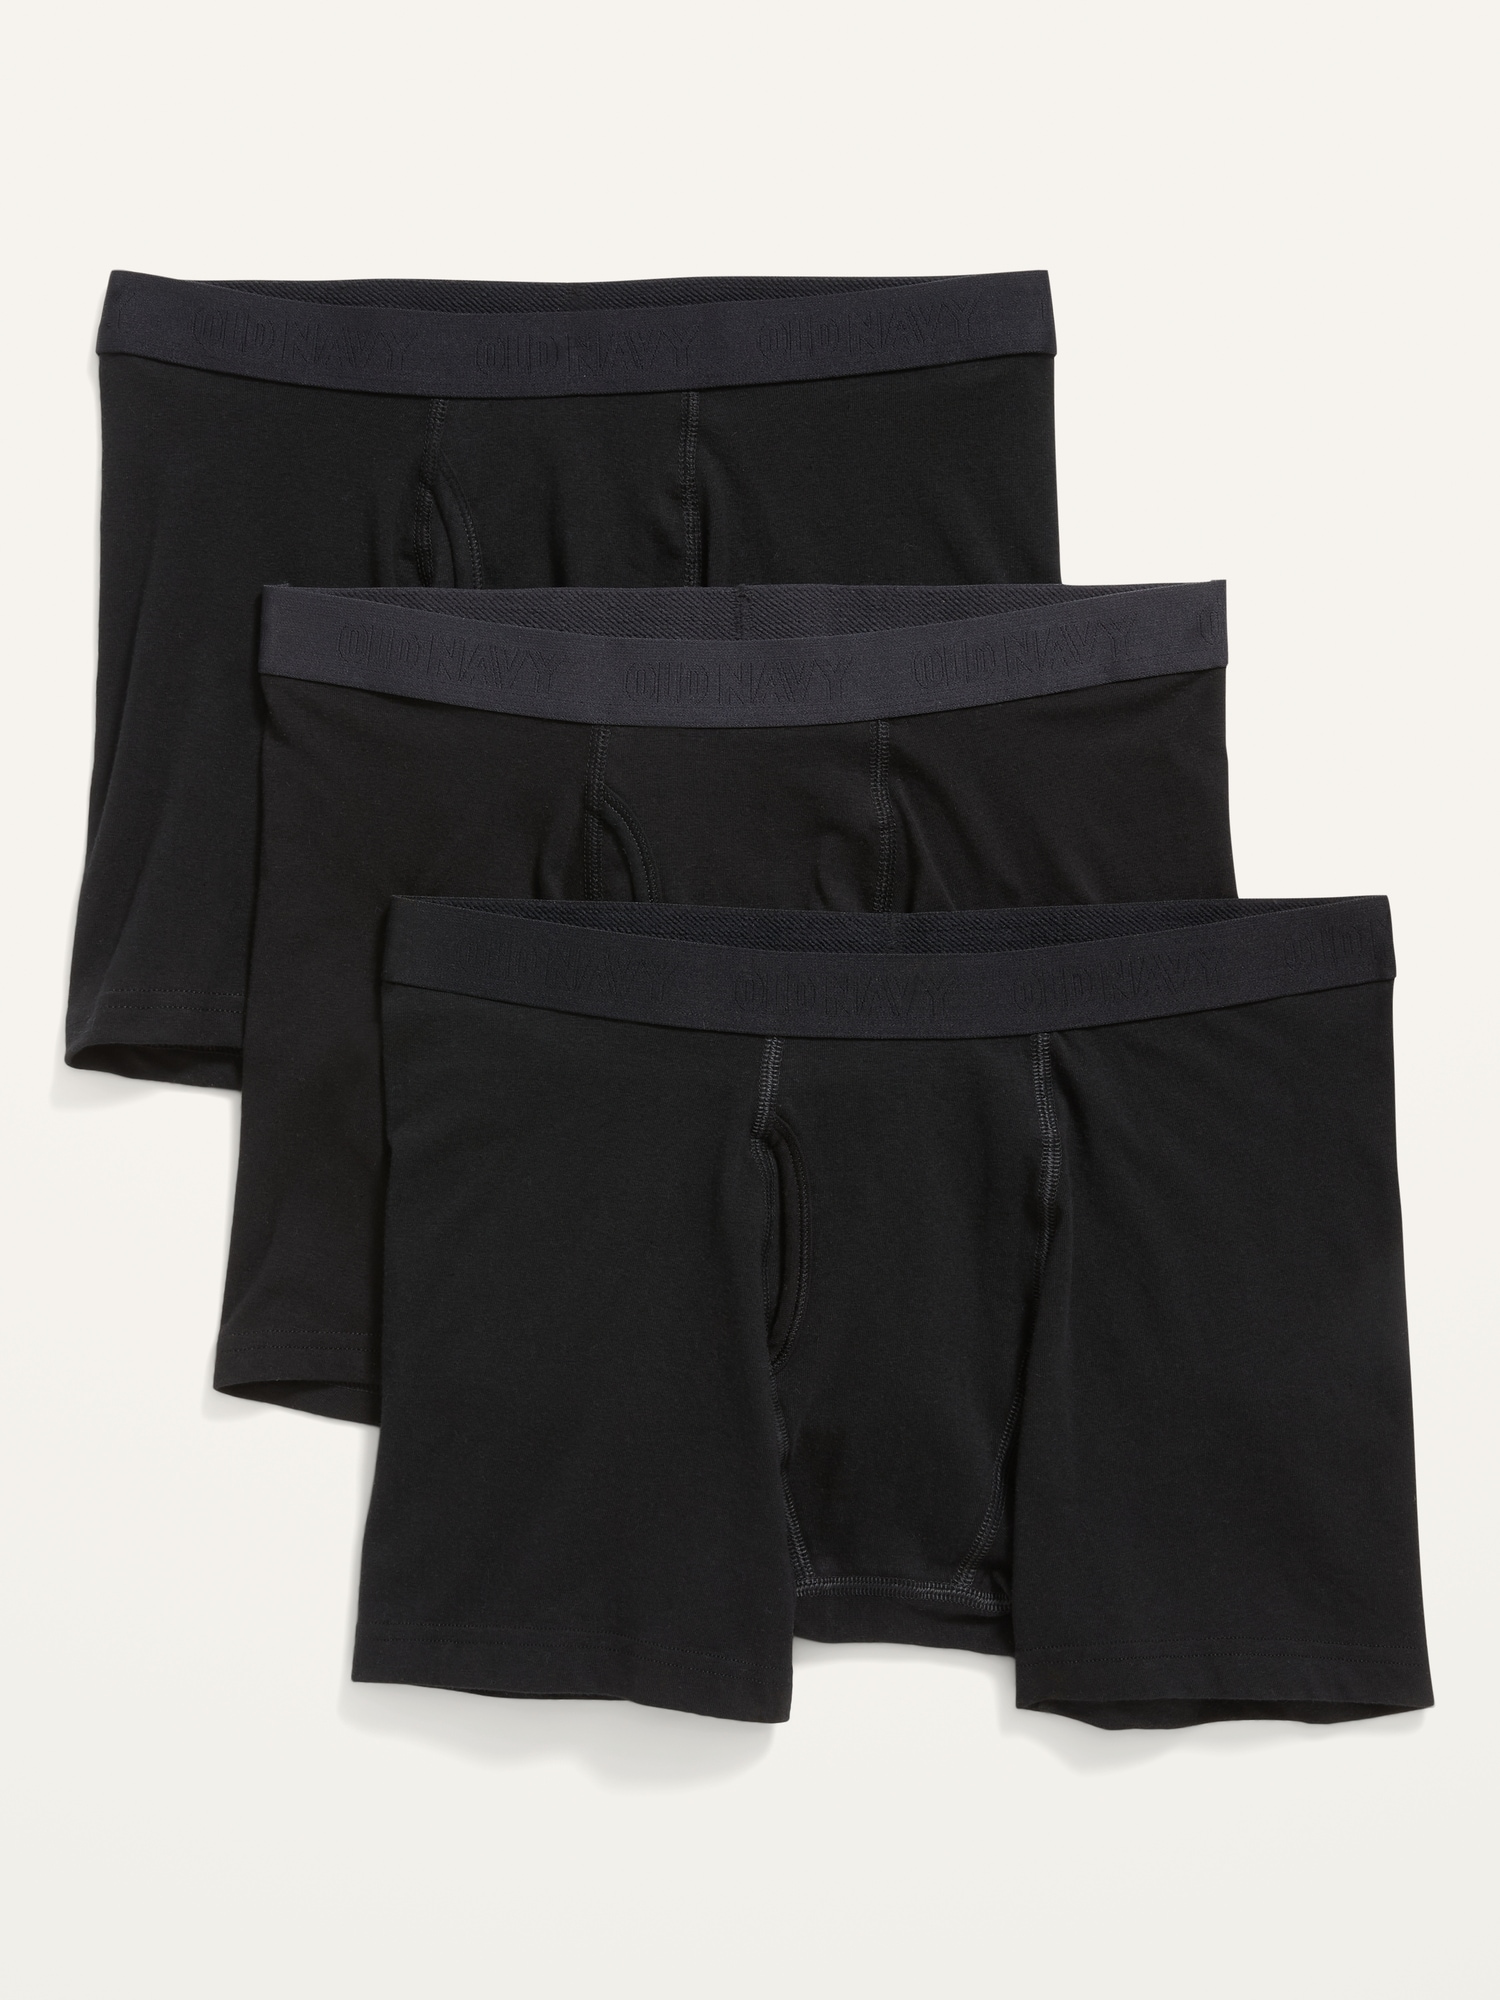 Built-In Flex Boxer-Briefs Underwear 3-Pack --4.5-inch inseam | Old Navy